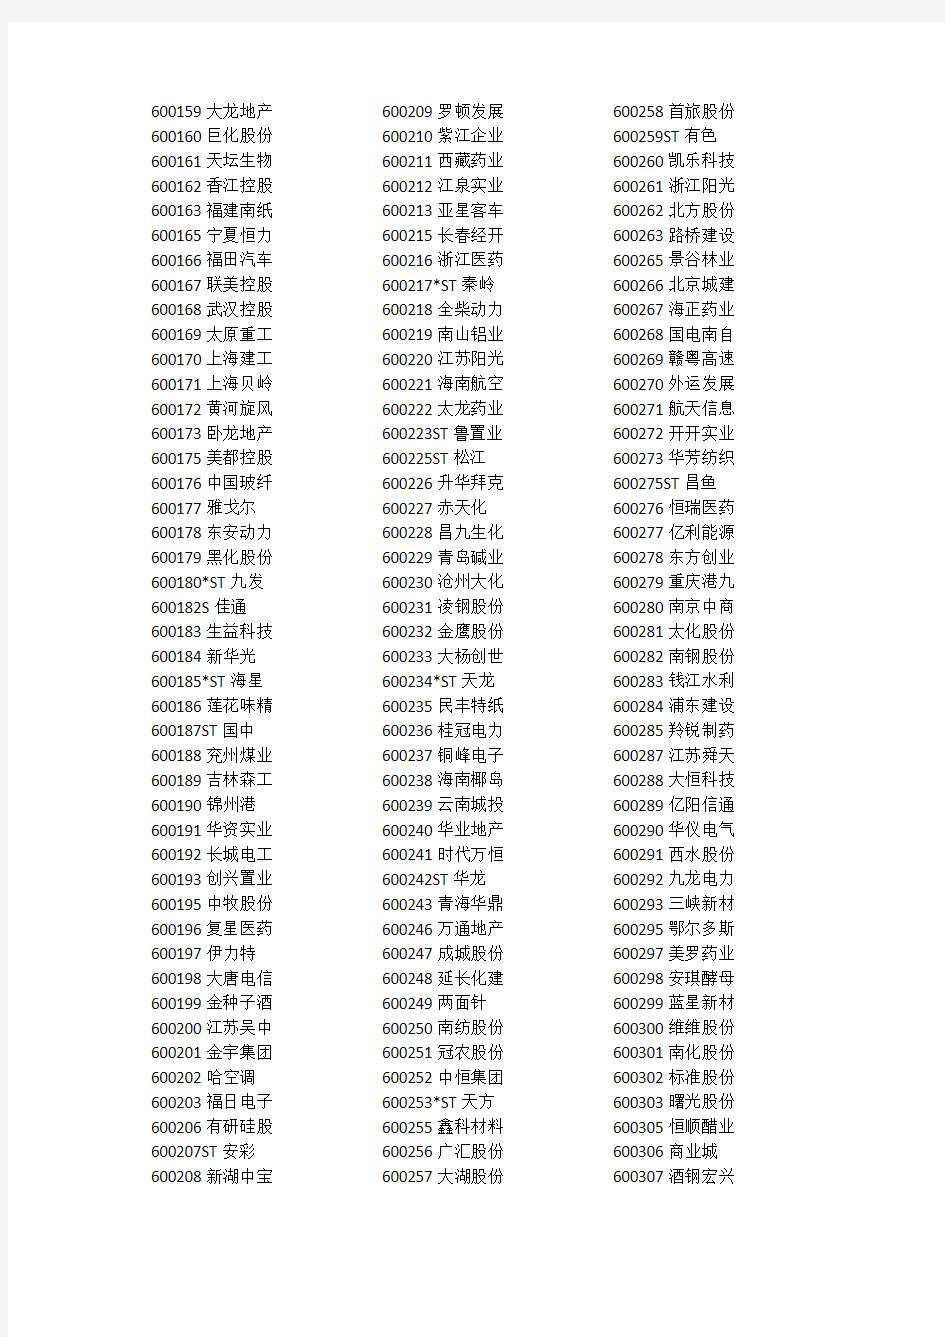 2017年中国上市A股公司名单及其证券代码